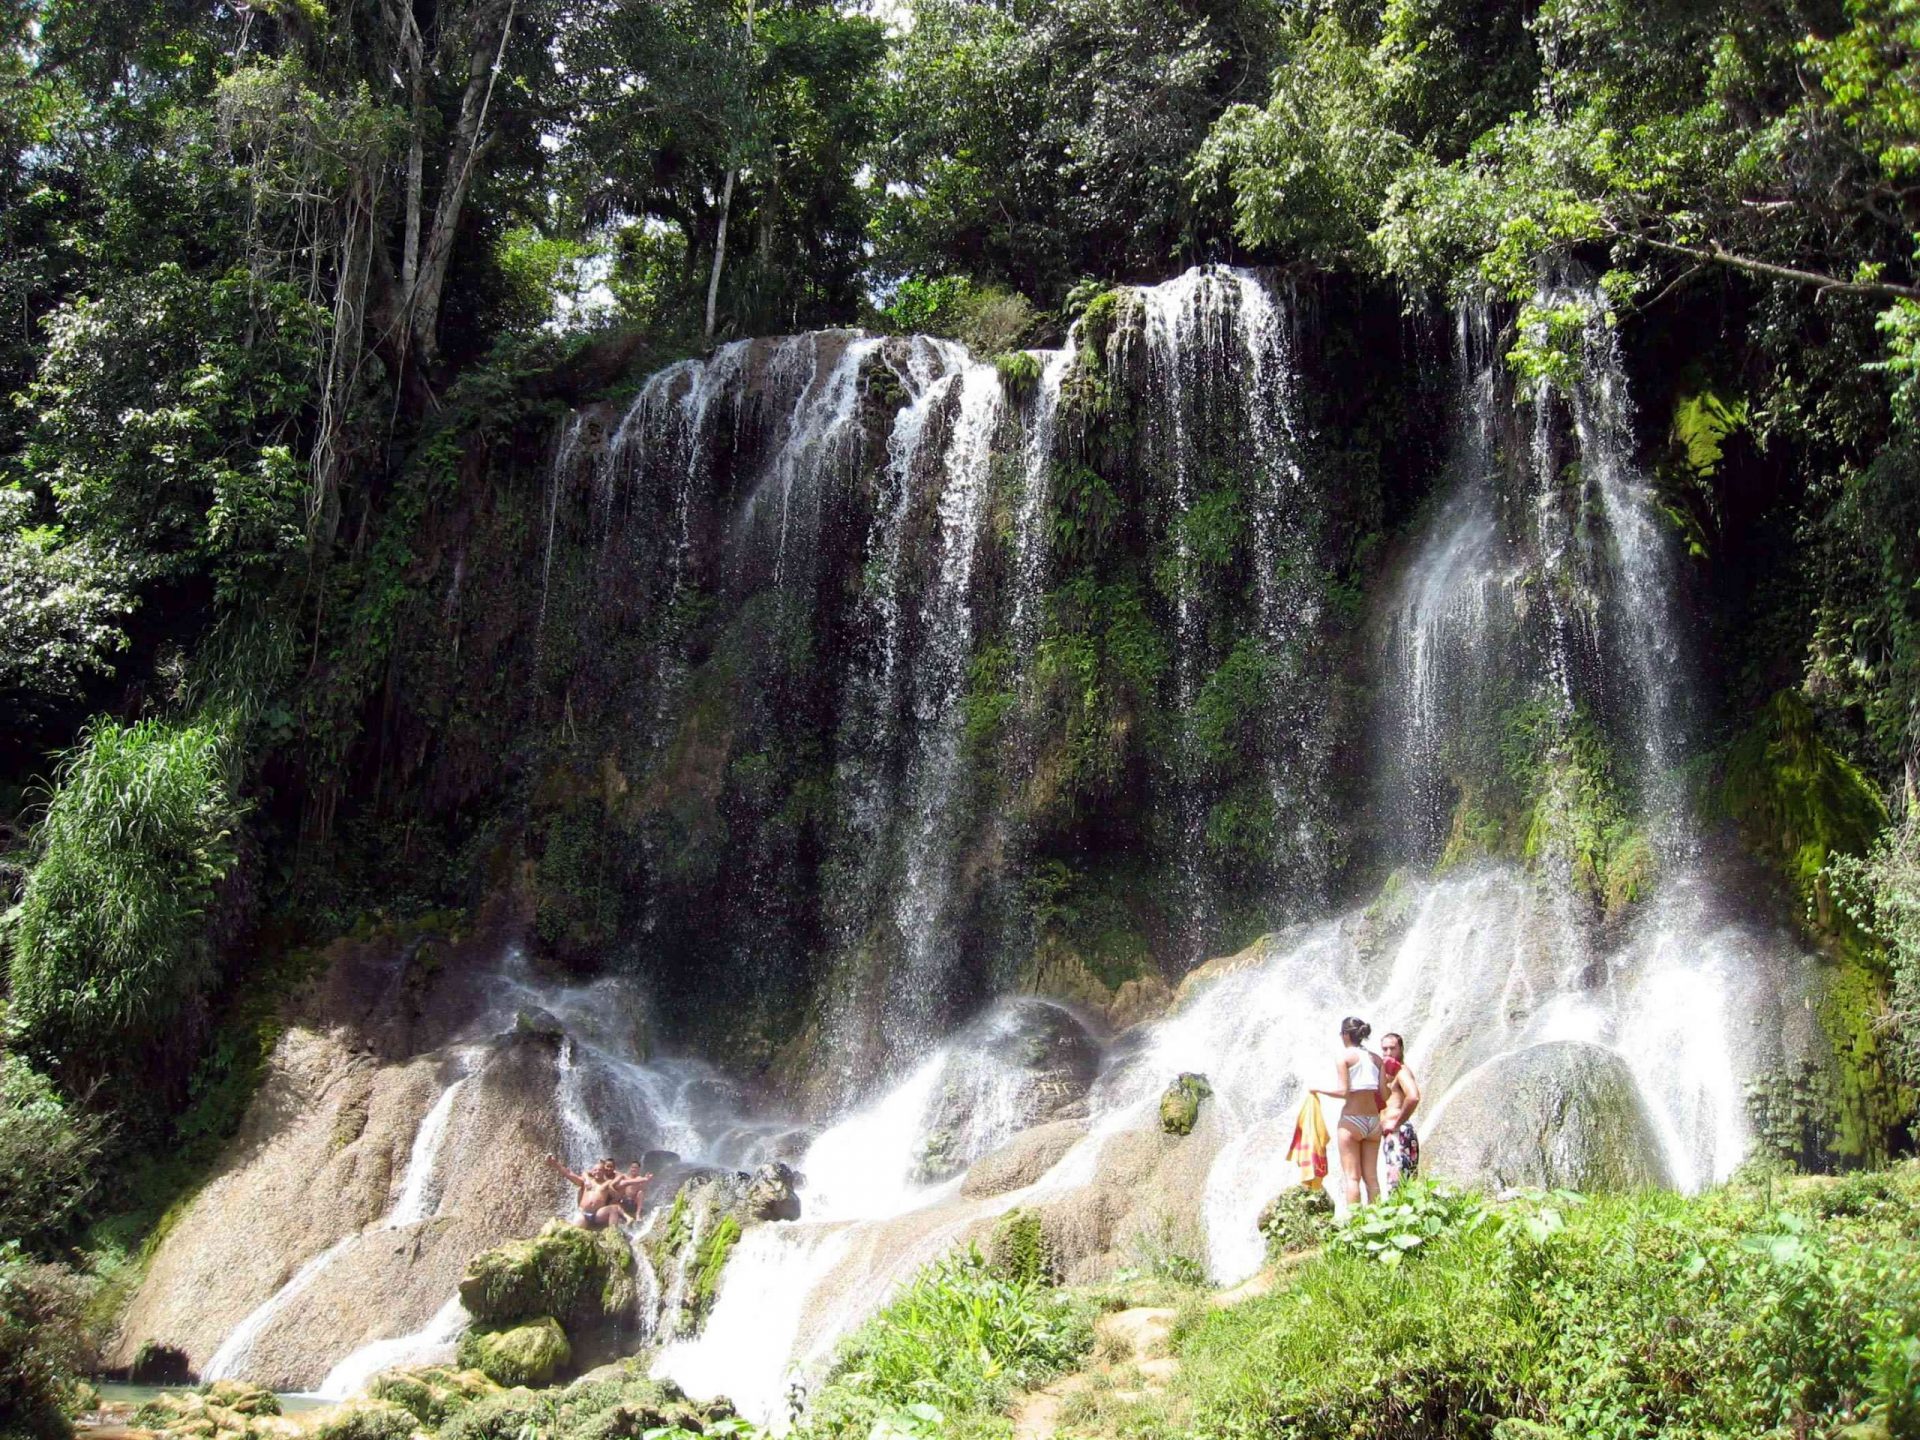 personas en la base de las cascadas que fluyen desde un bosque de altos árboles verdes y grandes rocas en la terminación de las cascadas en el Parque Nacional Desembarco del Granma